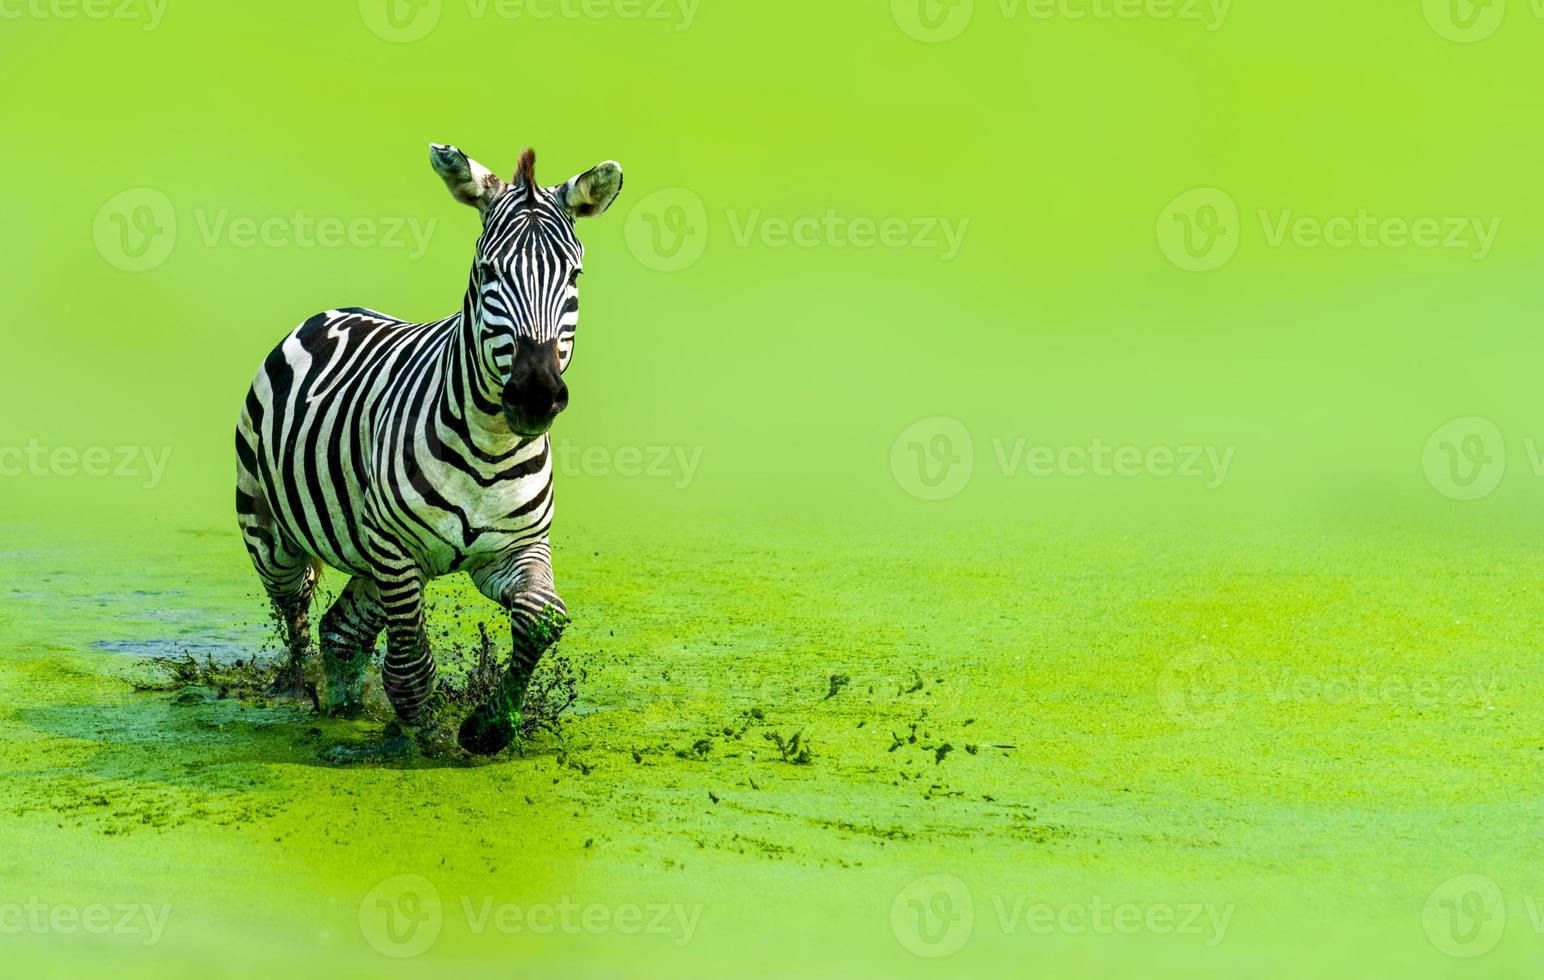 a zebra estava correndo graciosamente correndo na água verde foto